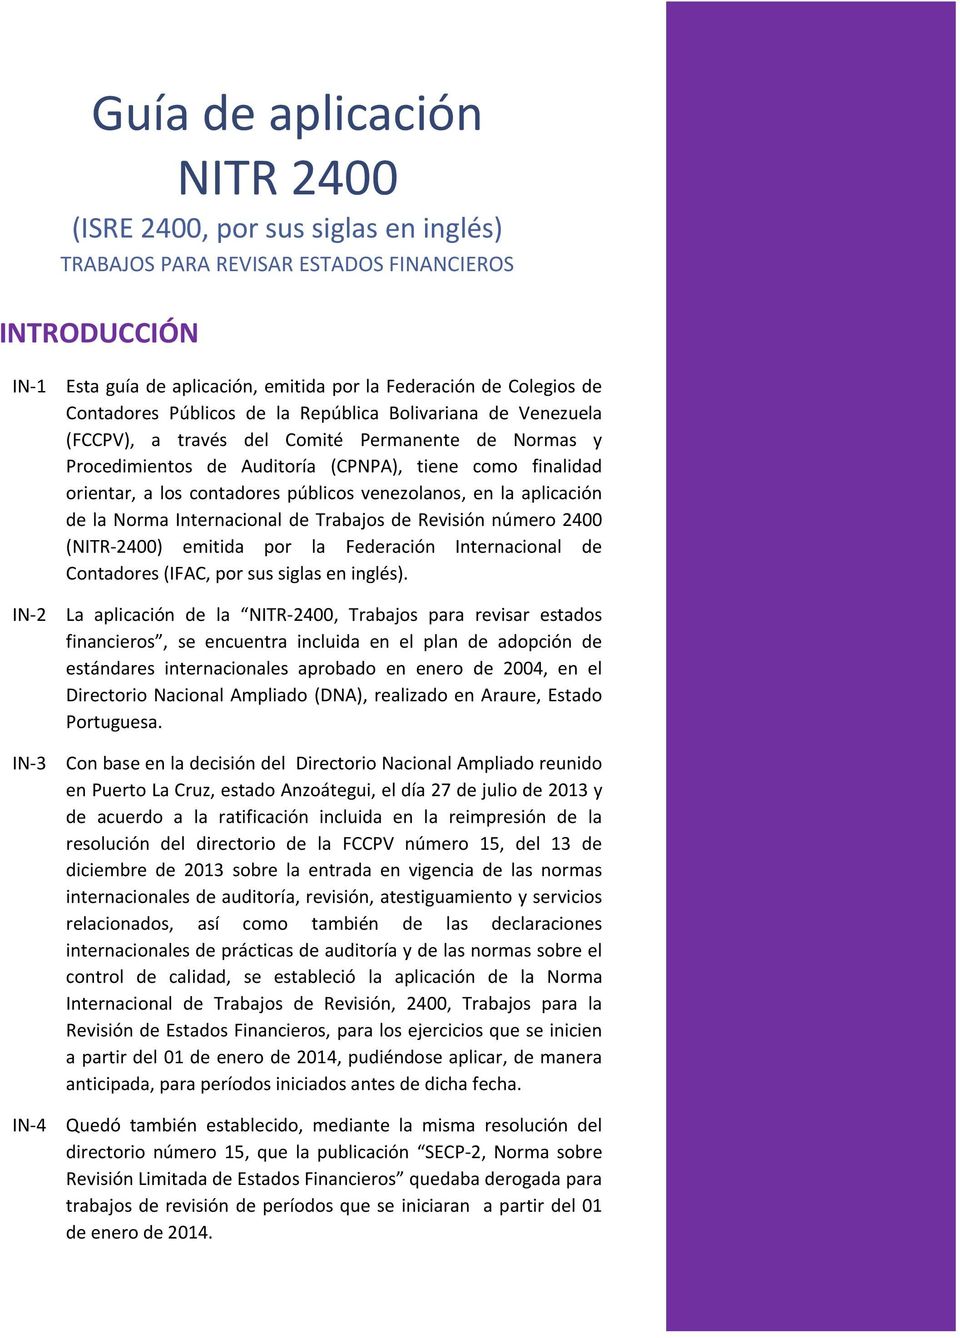 contadores públicos venezolanos, en la aplicación de la Norma Internacional de Trabajos de Revisión número 2400 (NITR-2400) emitida por la Federación Internacional de Contadores (IFAC, por sus siglas